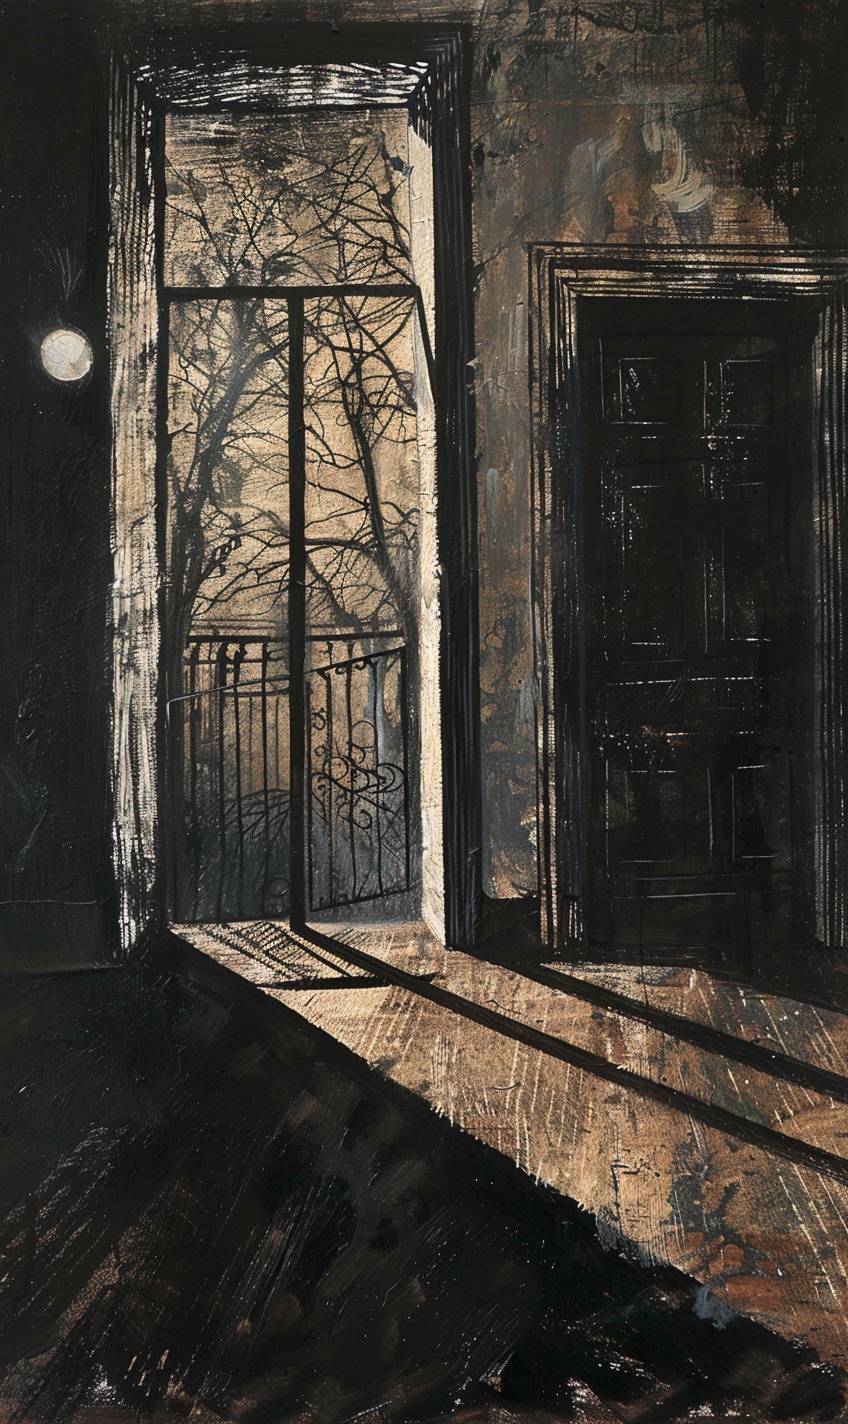 ゲイリー・バント風のスタイル、きしむドアと影のある幽霊館